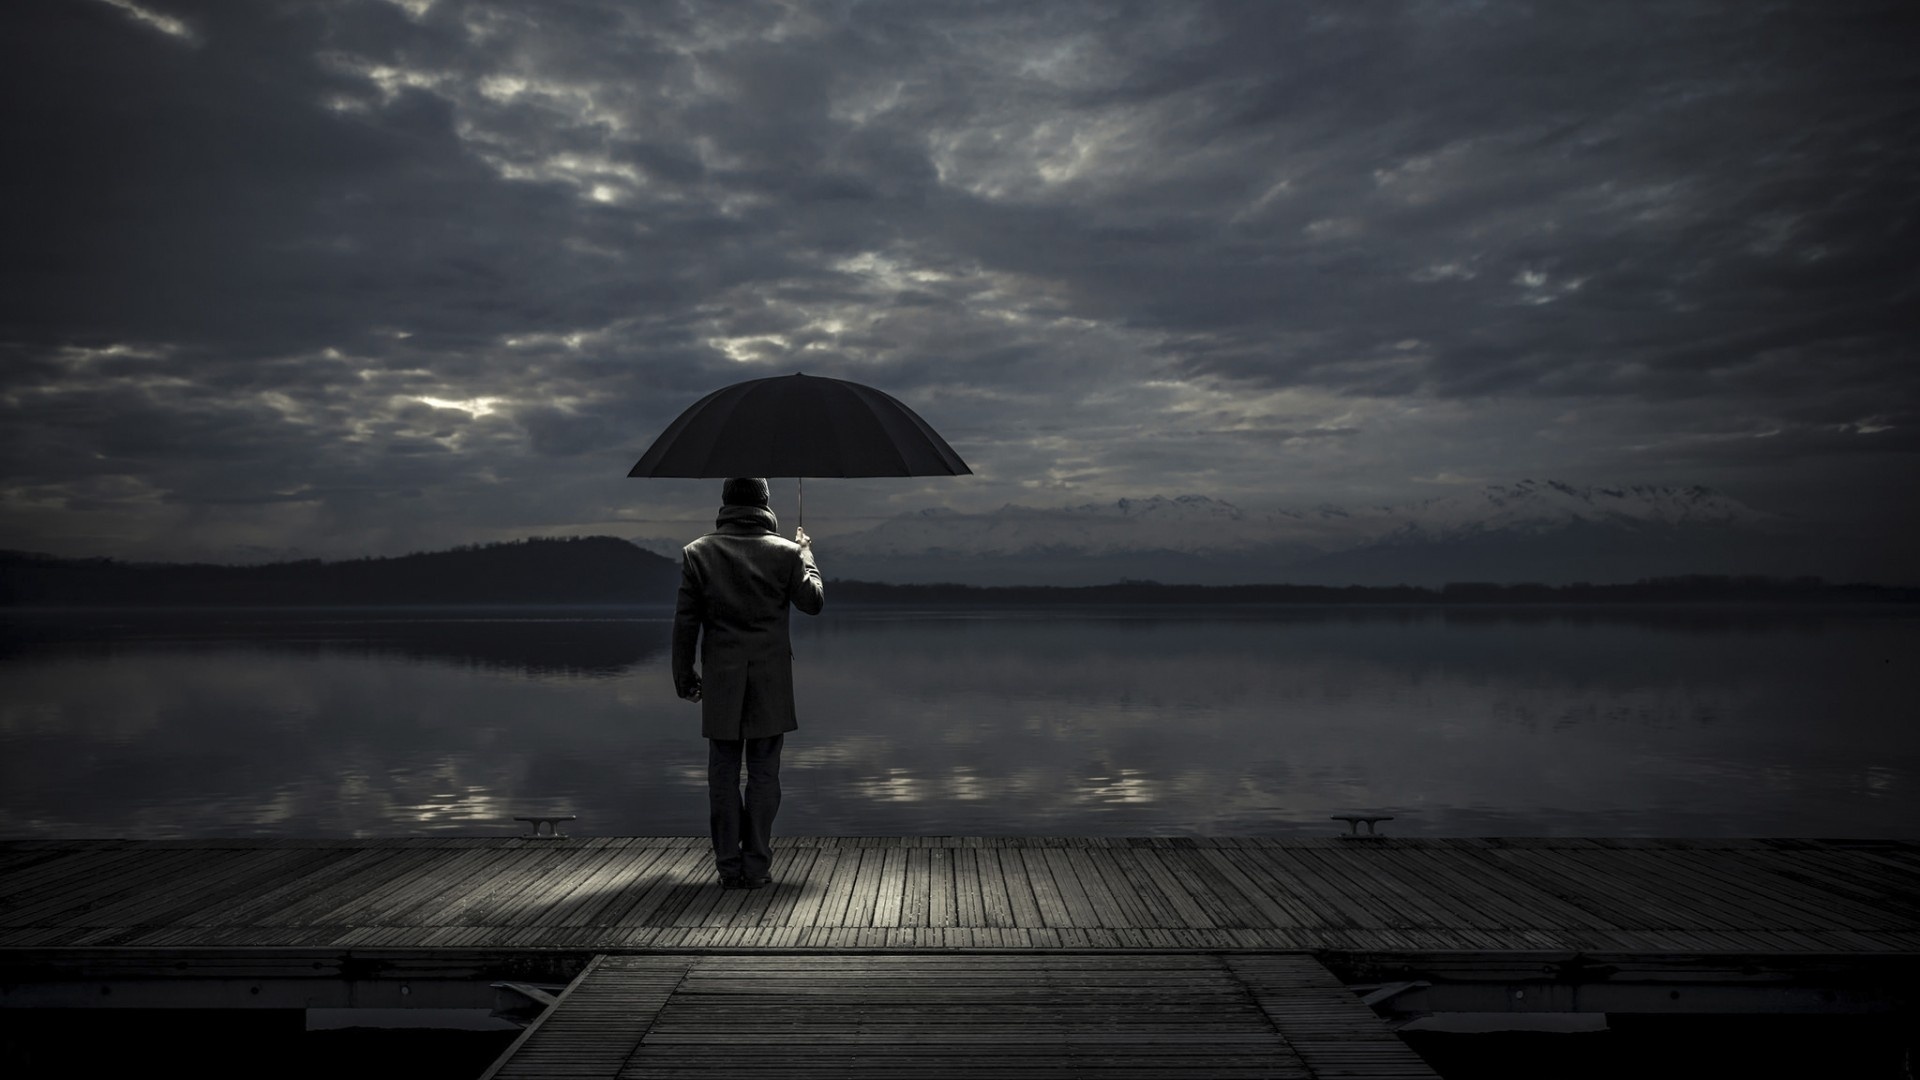 登船码头,雨伞下的男人,湖泊,遥远的海岸,阳光普照的阴暗天空,温和的